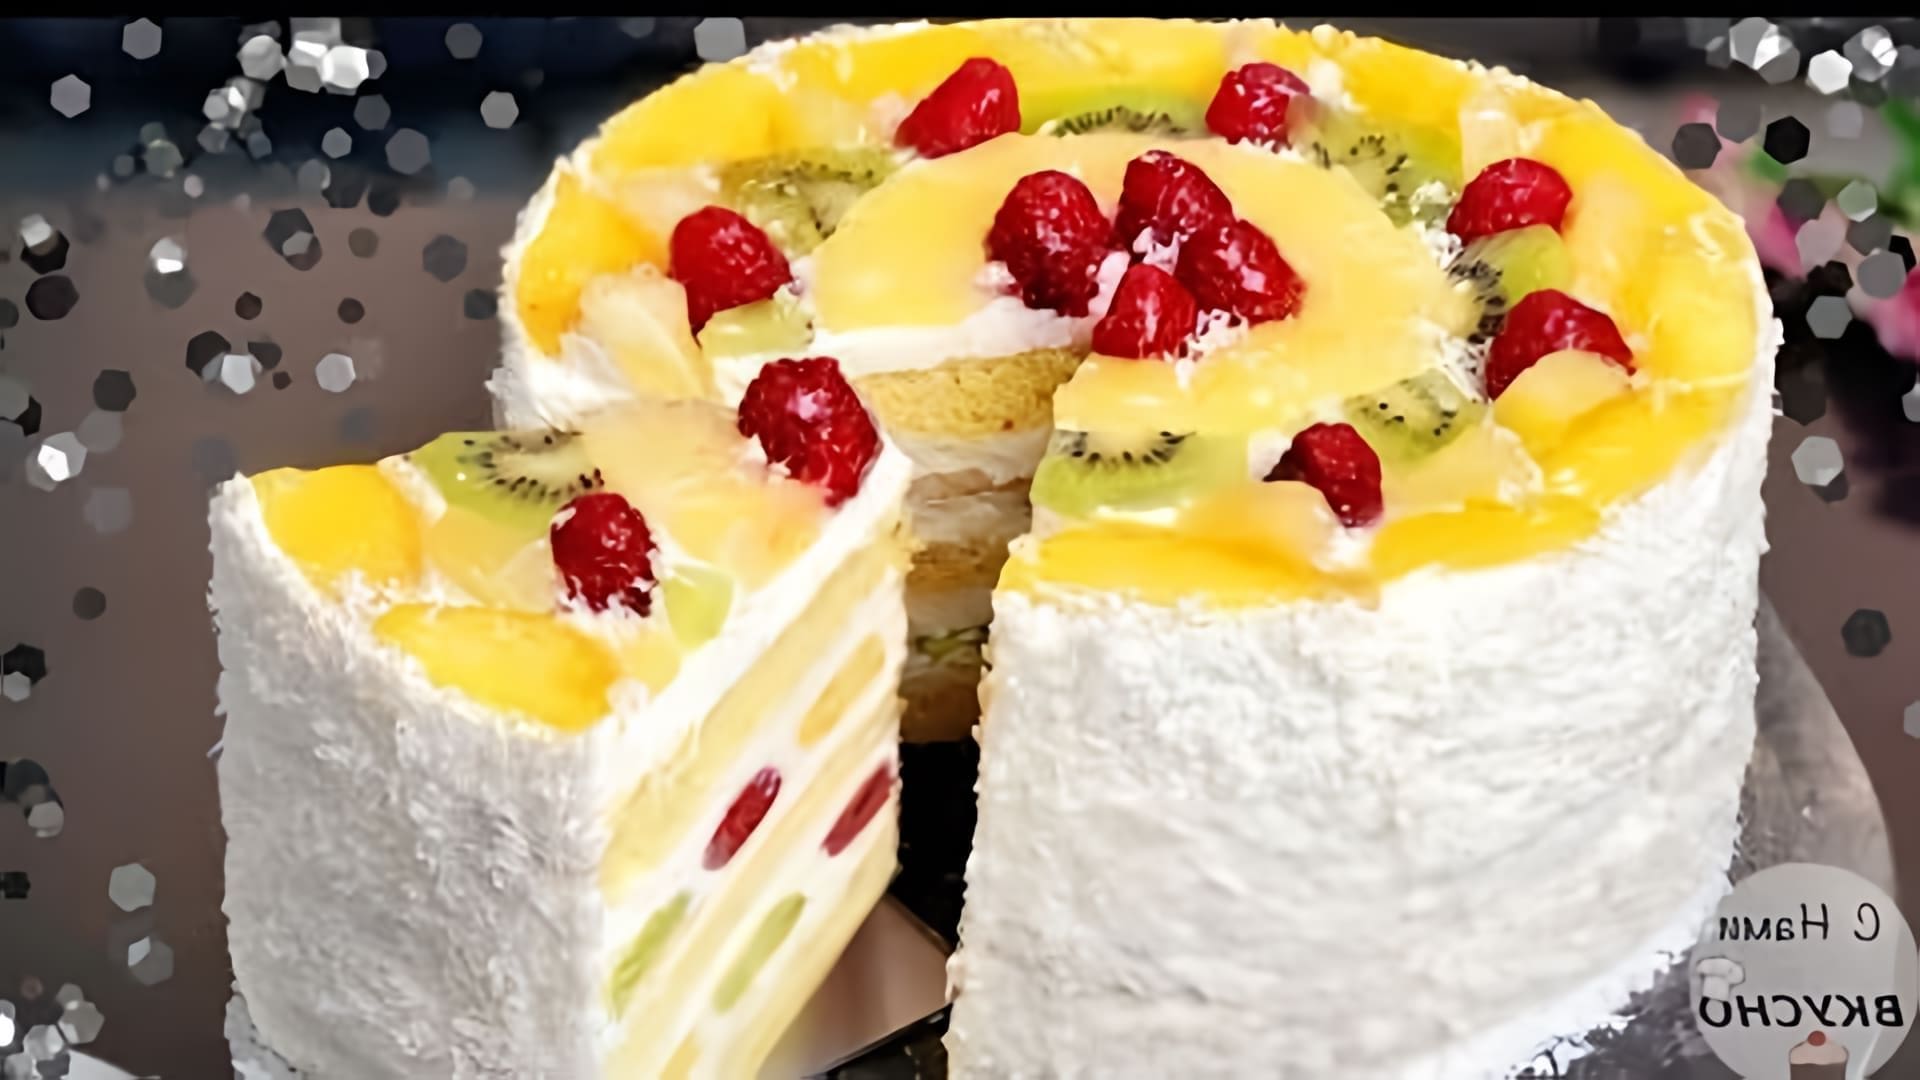 В этом видео демонстрируется рецепт приготовления фруктового торта